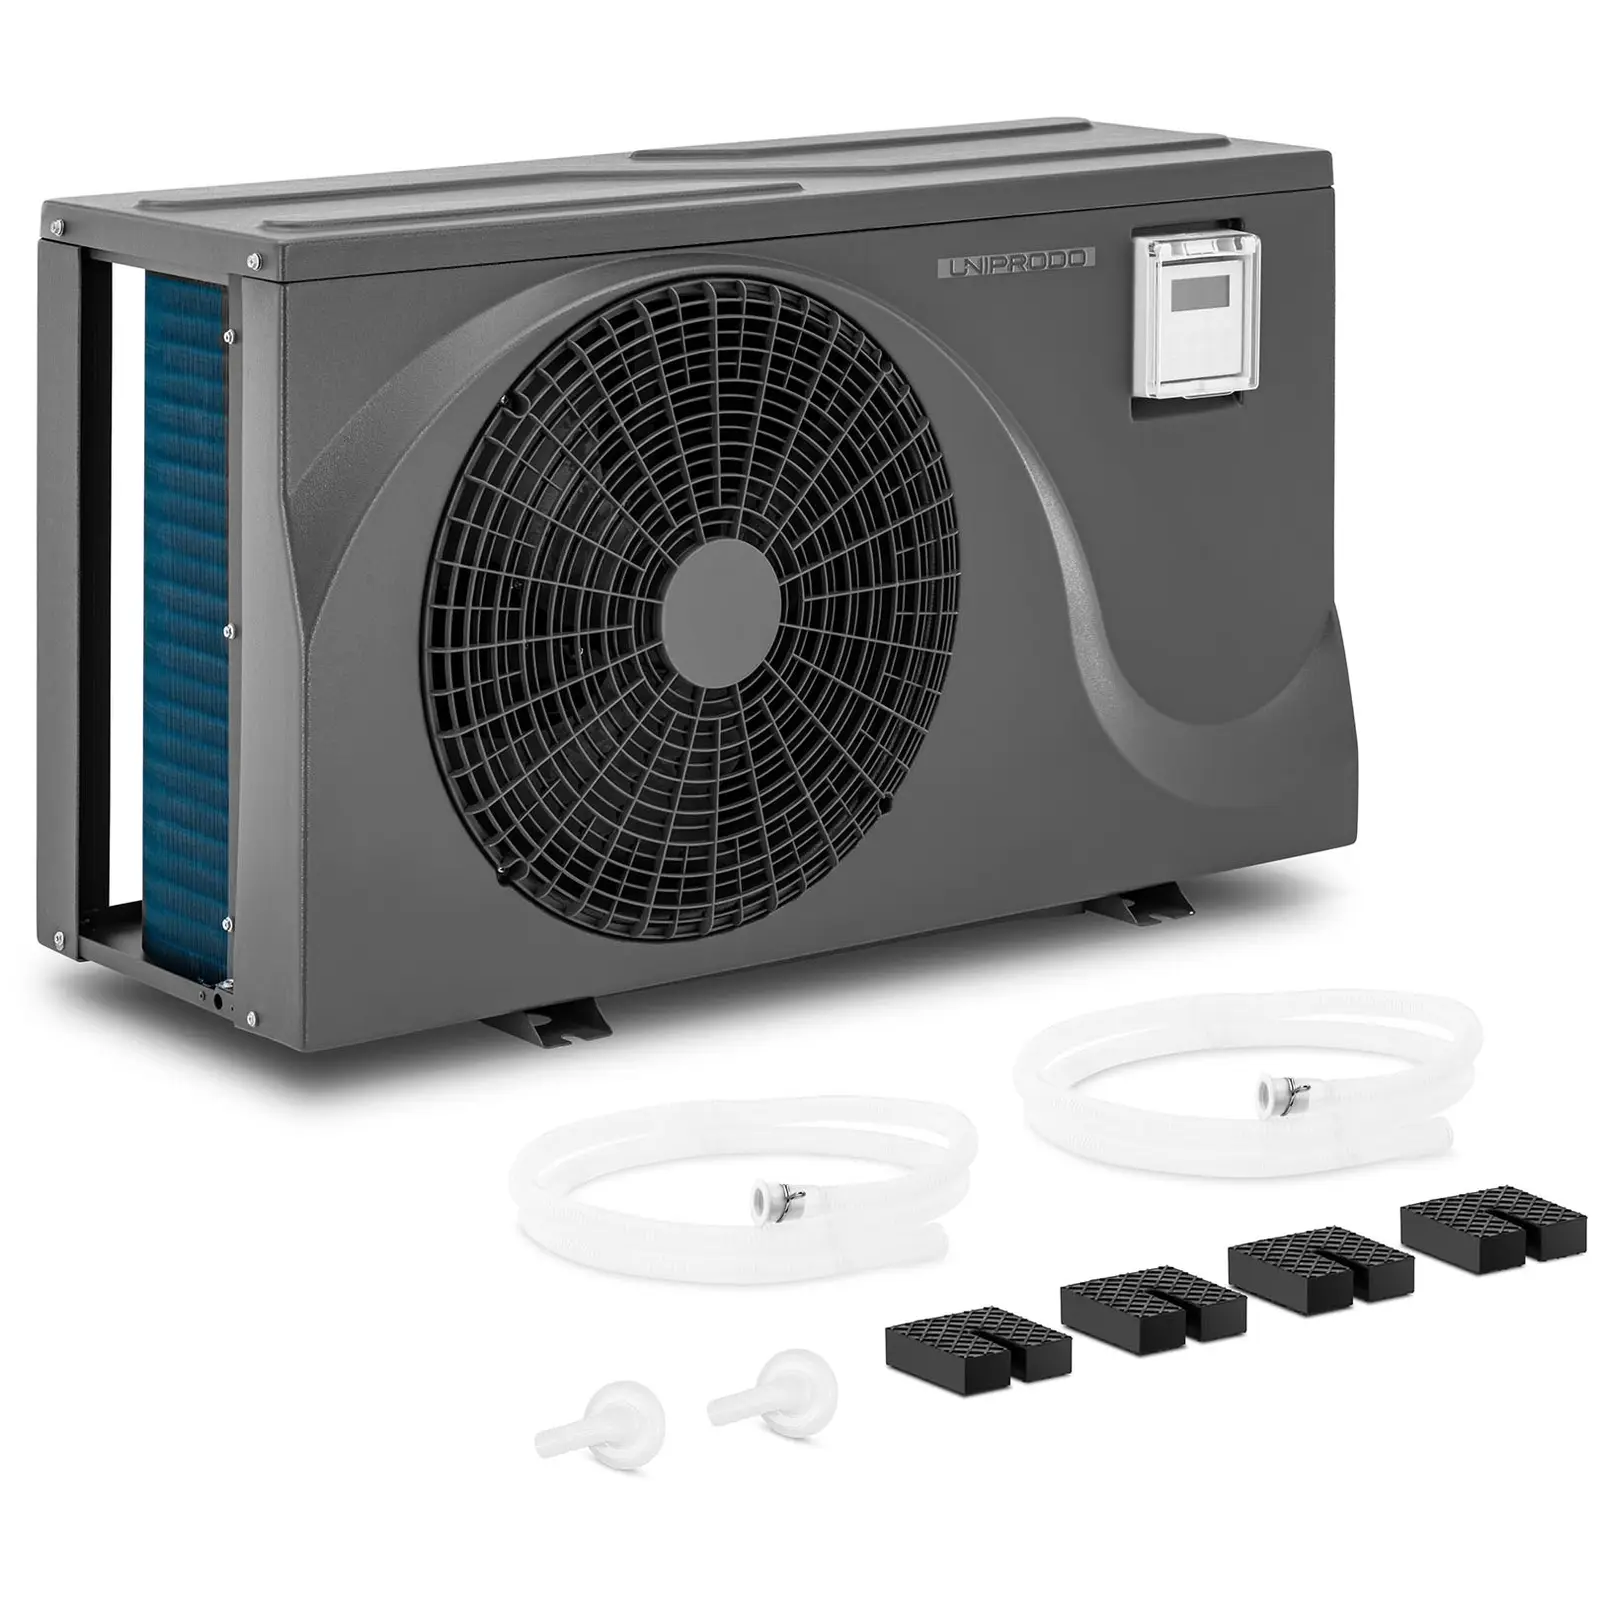 Calefacción para piscinas - bomba de calor - potencia calorífica de 7,4 kW - para piscinas de 20 - 40 m³